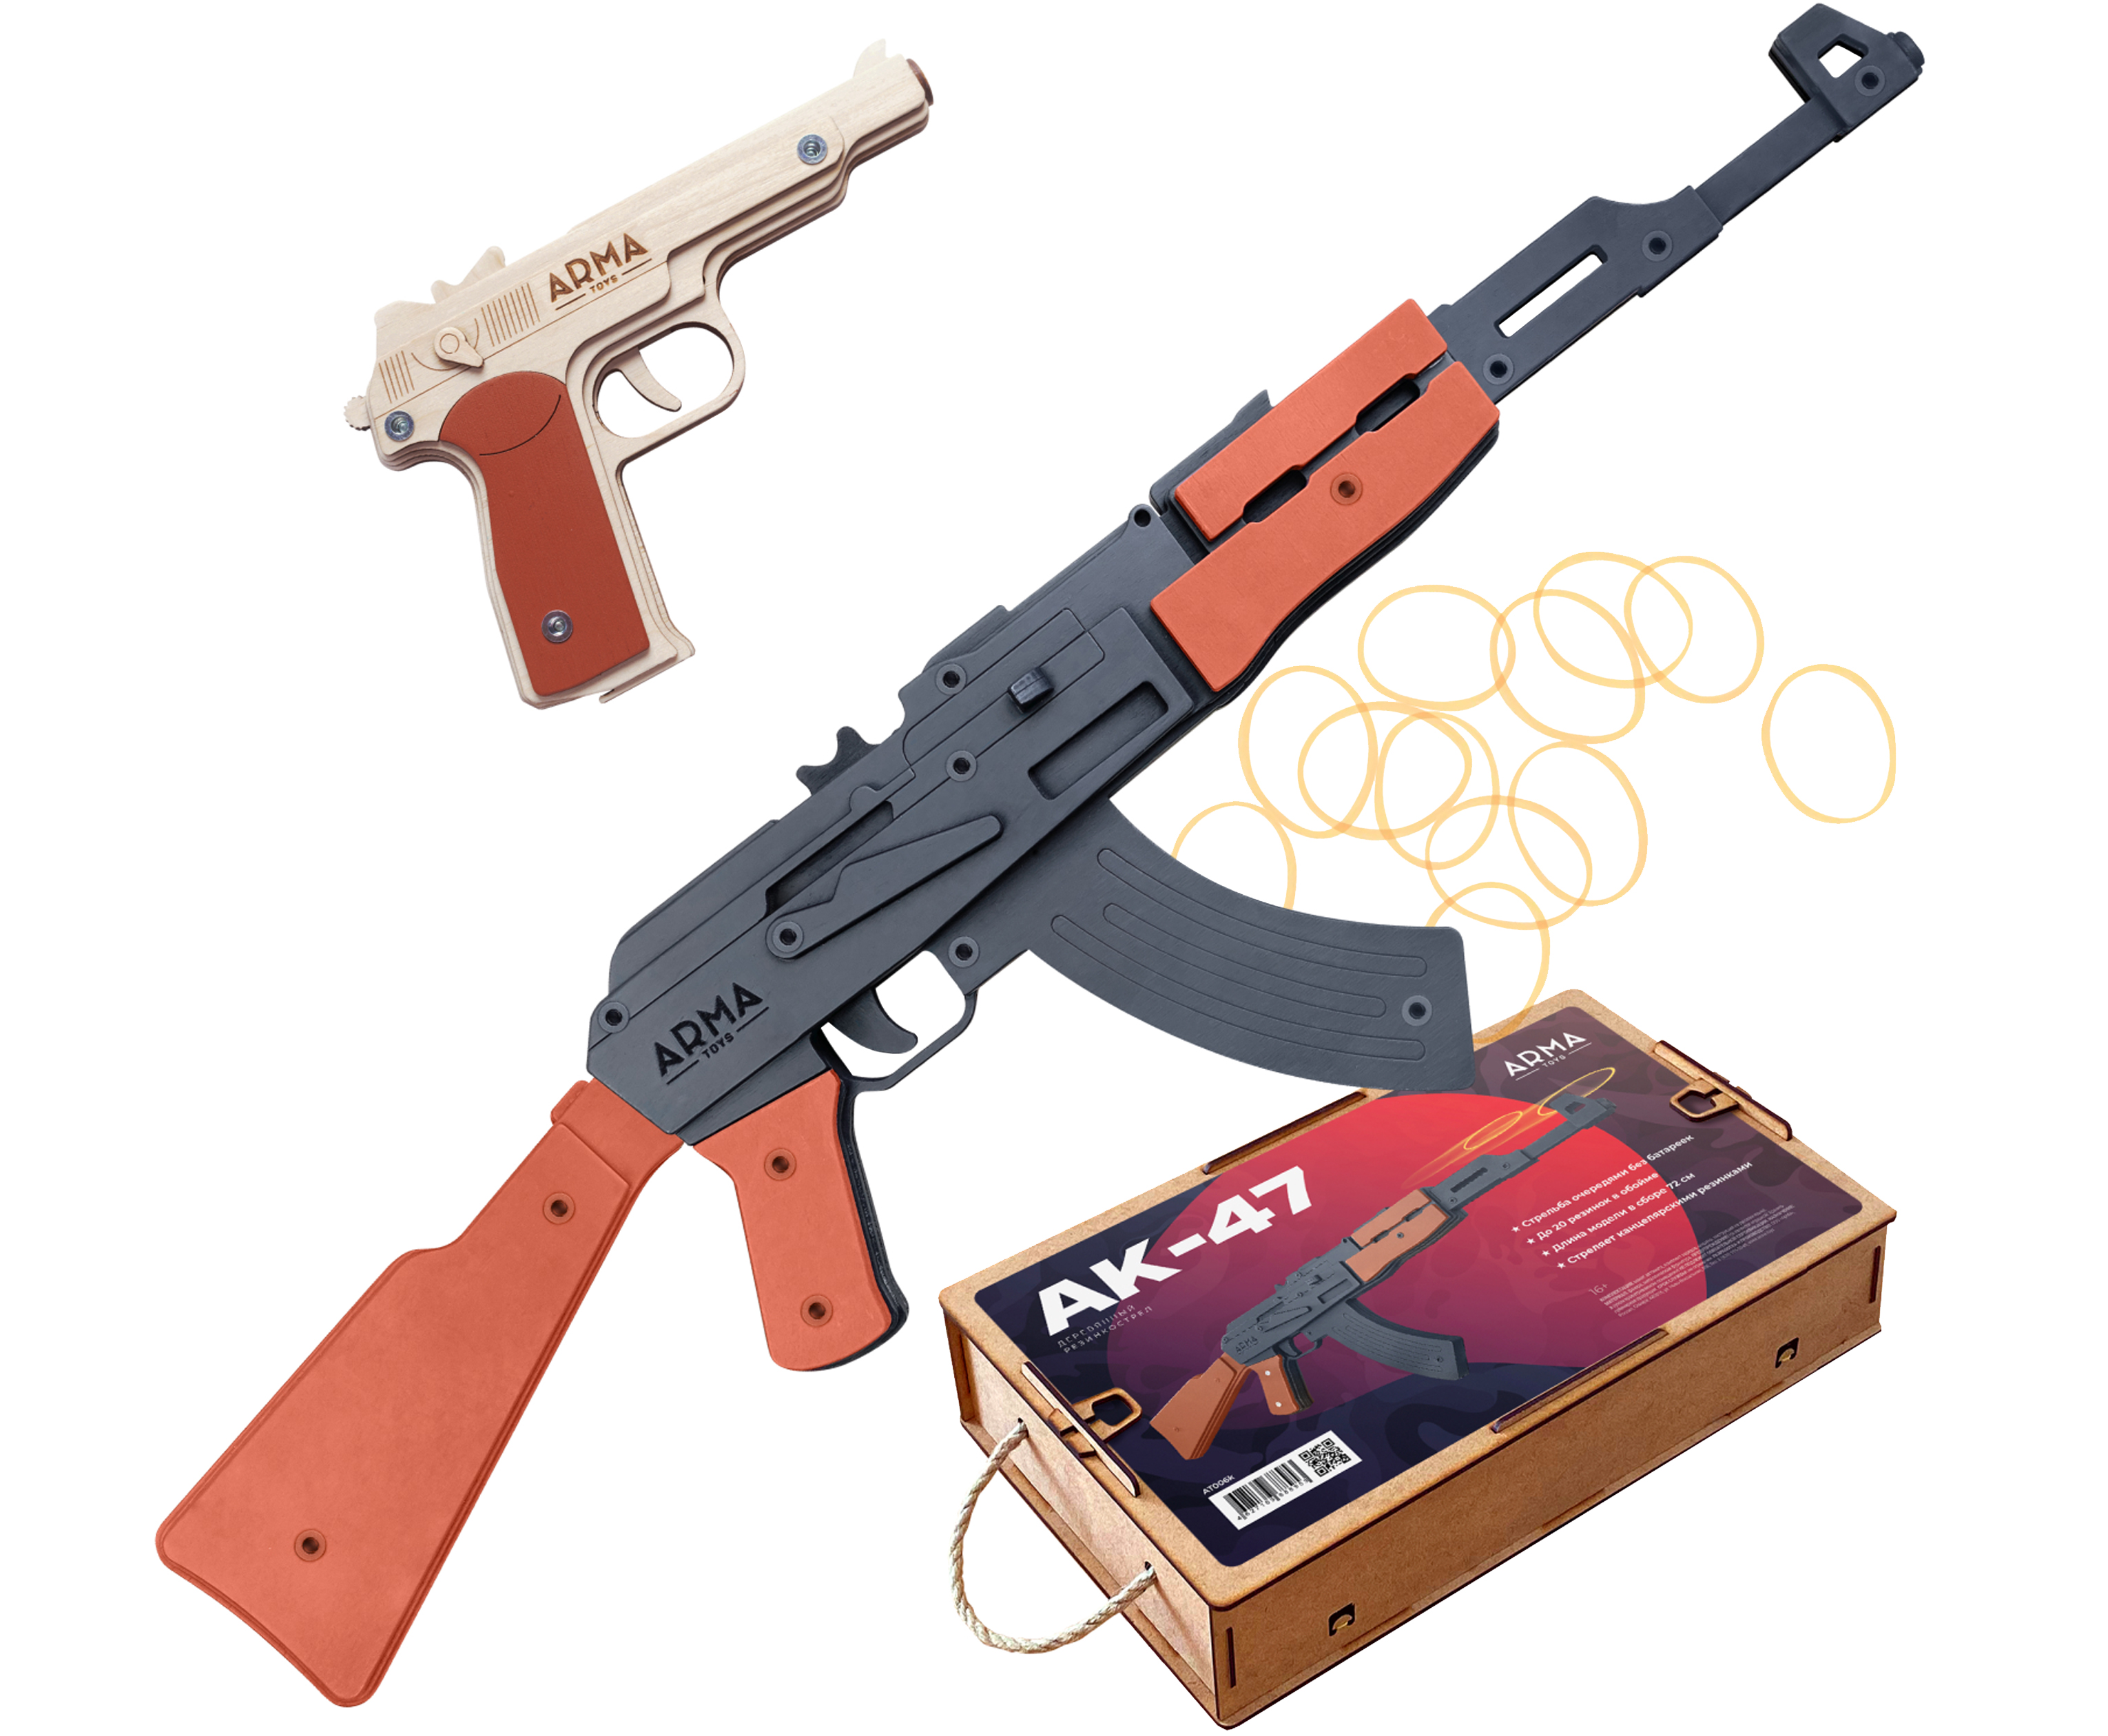 Набор игрушечных резинкострелов Arma toys Военный специалист 2 набор игрушечных резинкострелов arma toys спецназ фбр 2 винтовка m4 пистолет глок at510